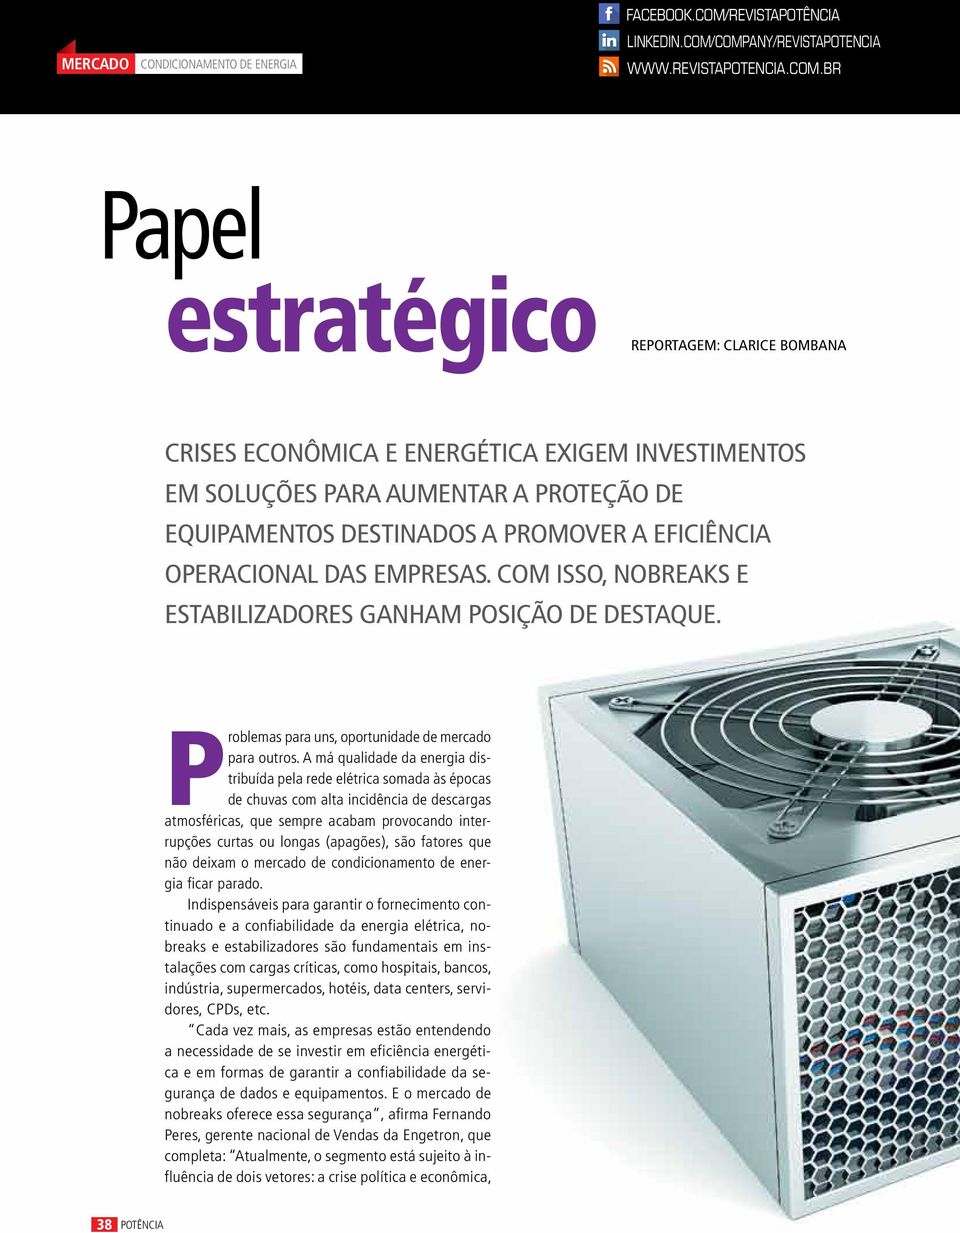 company/revistapotencia www.revistapotencia.com.br Papel estratégico Reportagem: Clarice Bombana Crises econômica e energética exigem investimentos em soluções para aumentar a proteção de